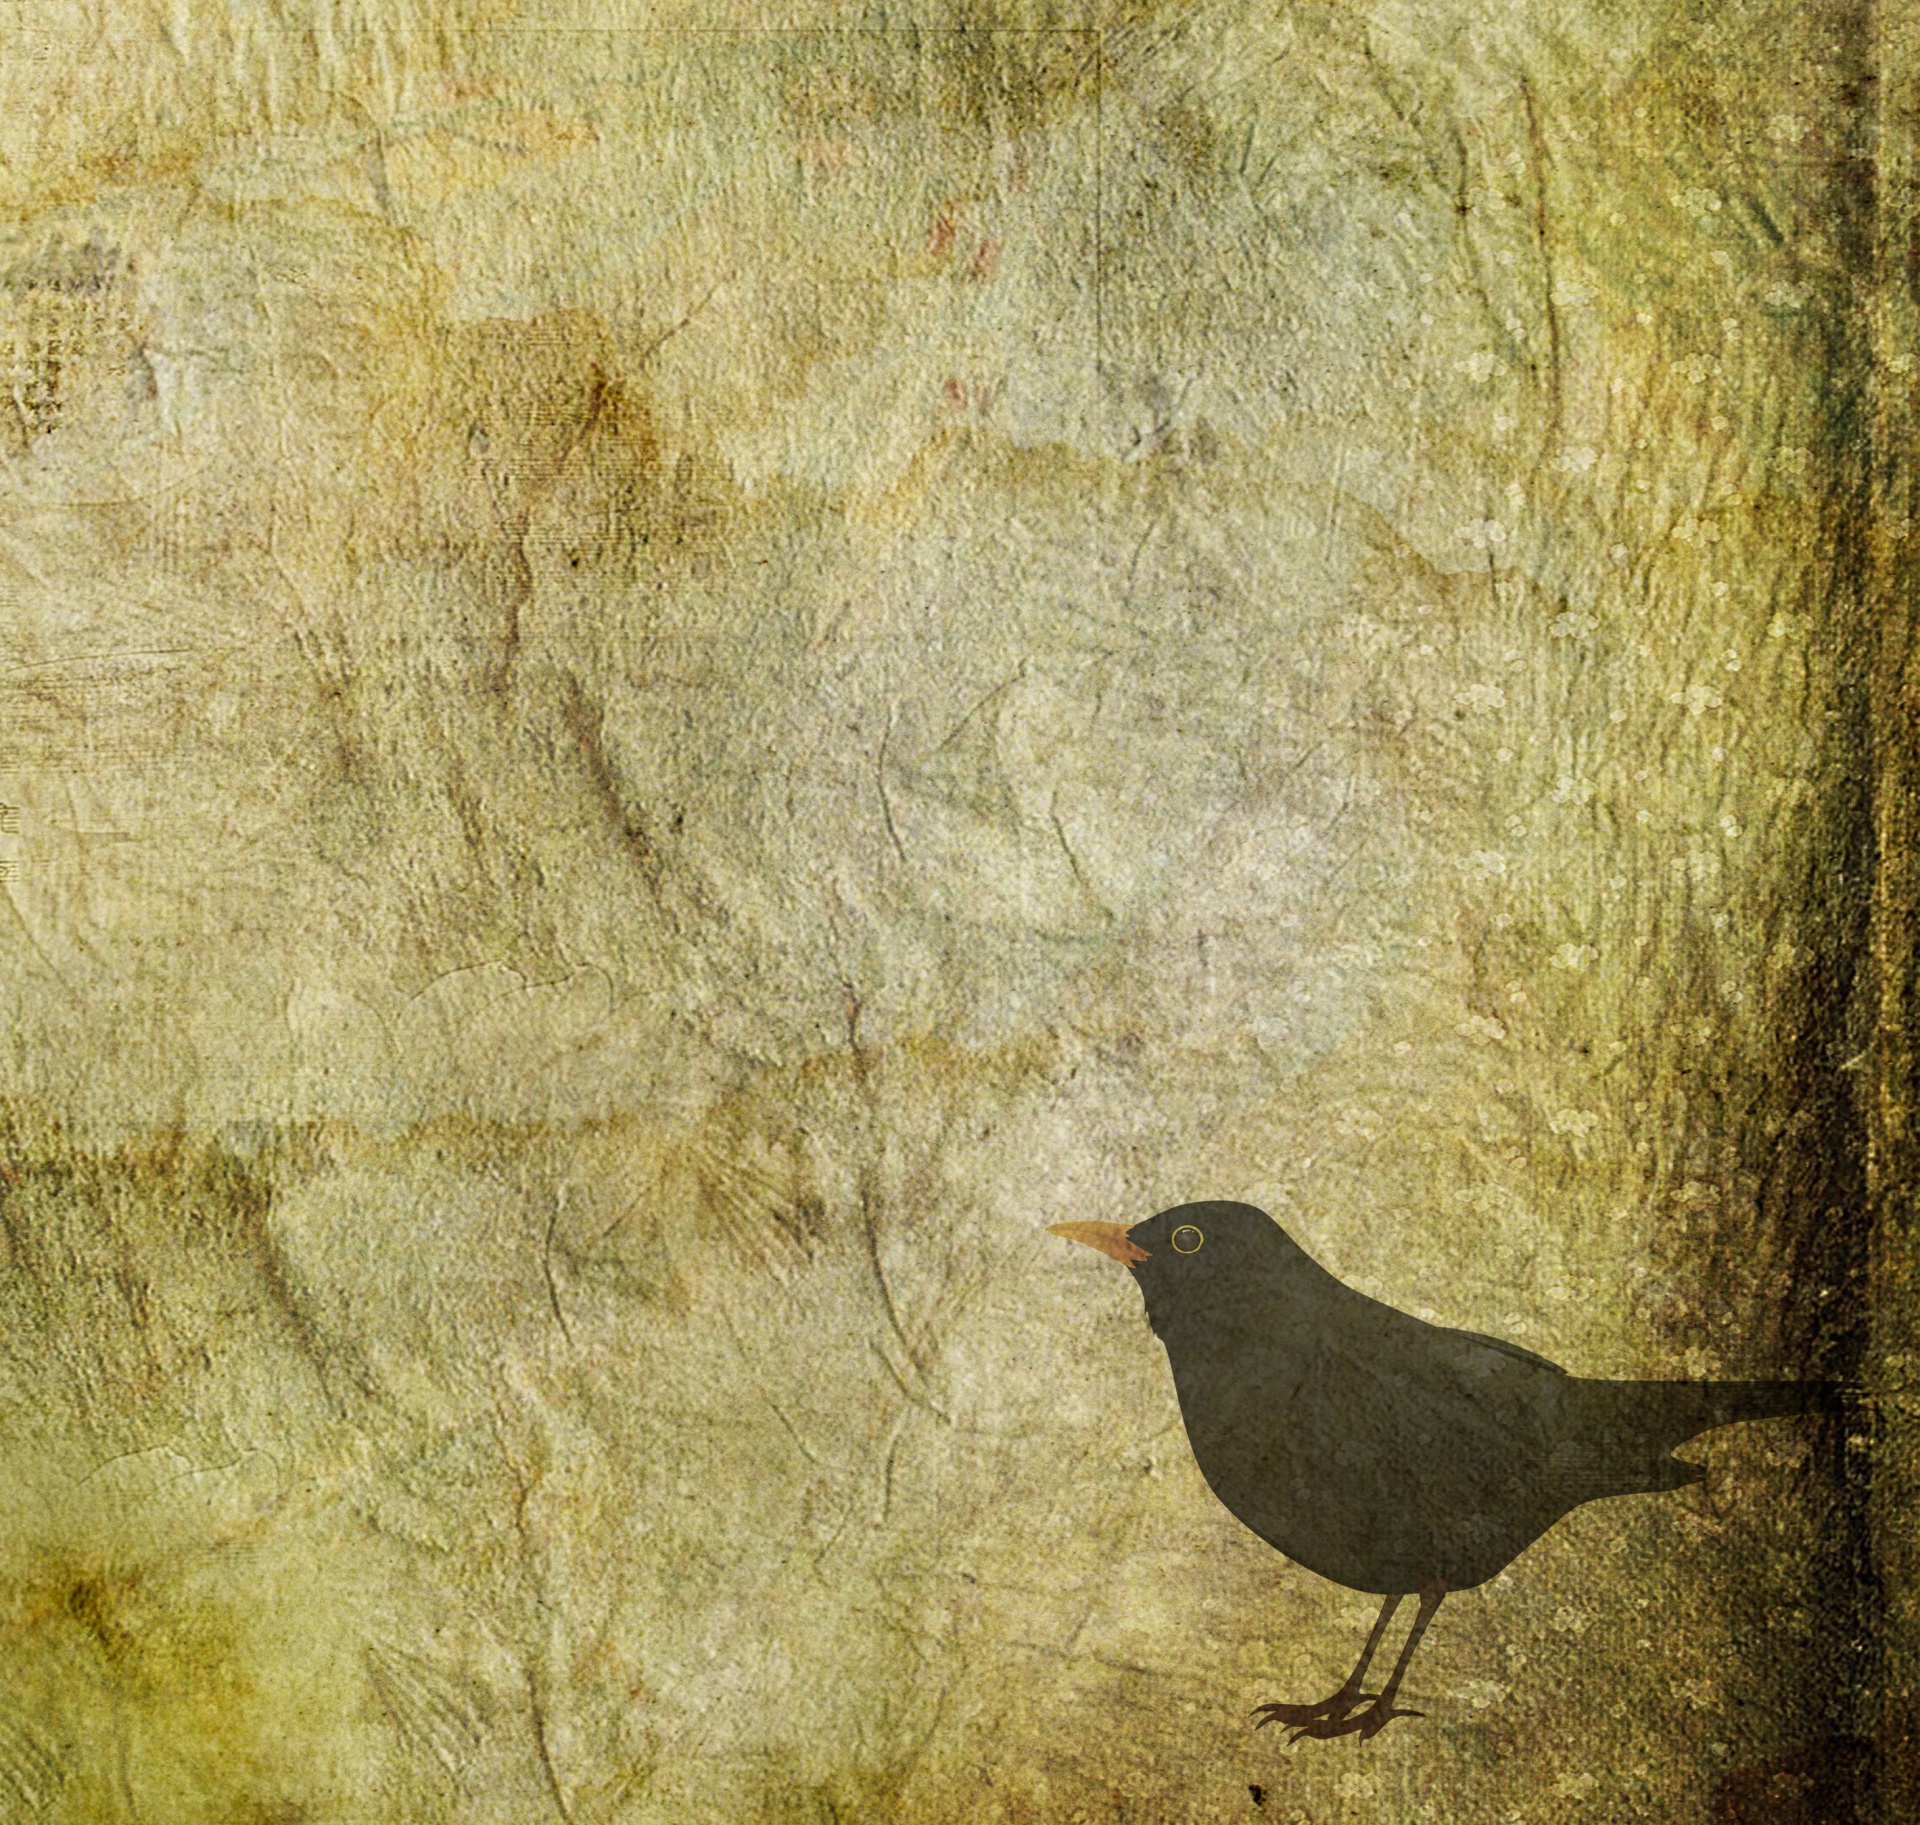 blackbird bird background free photo